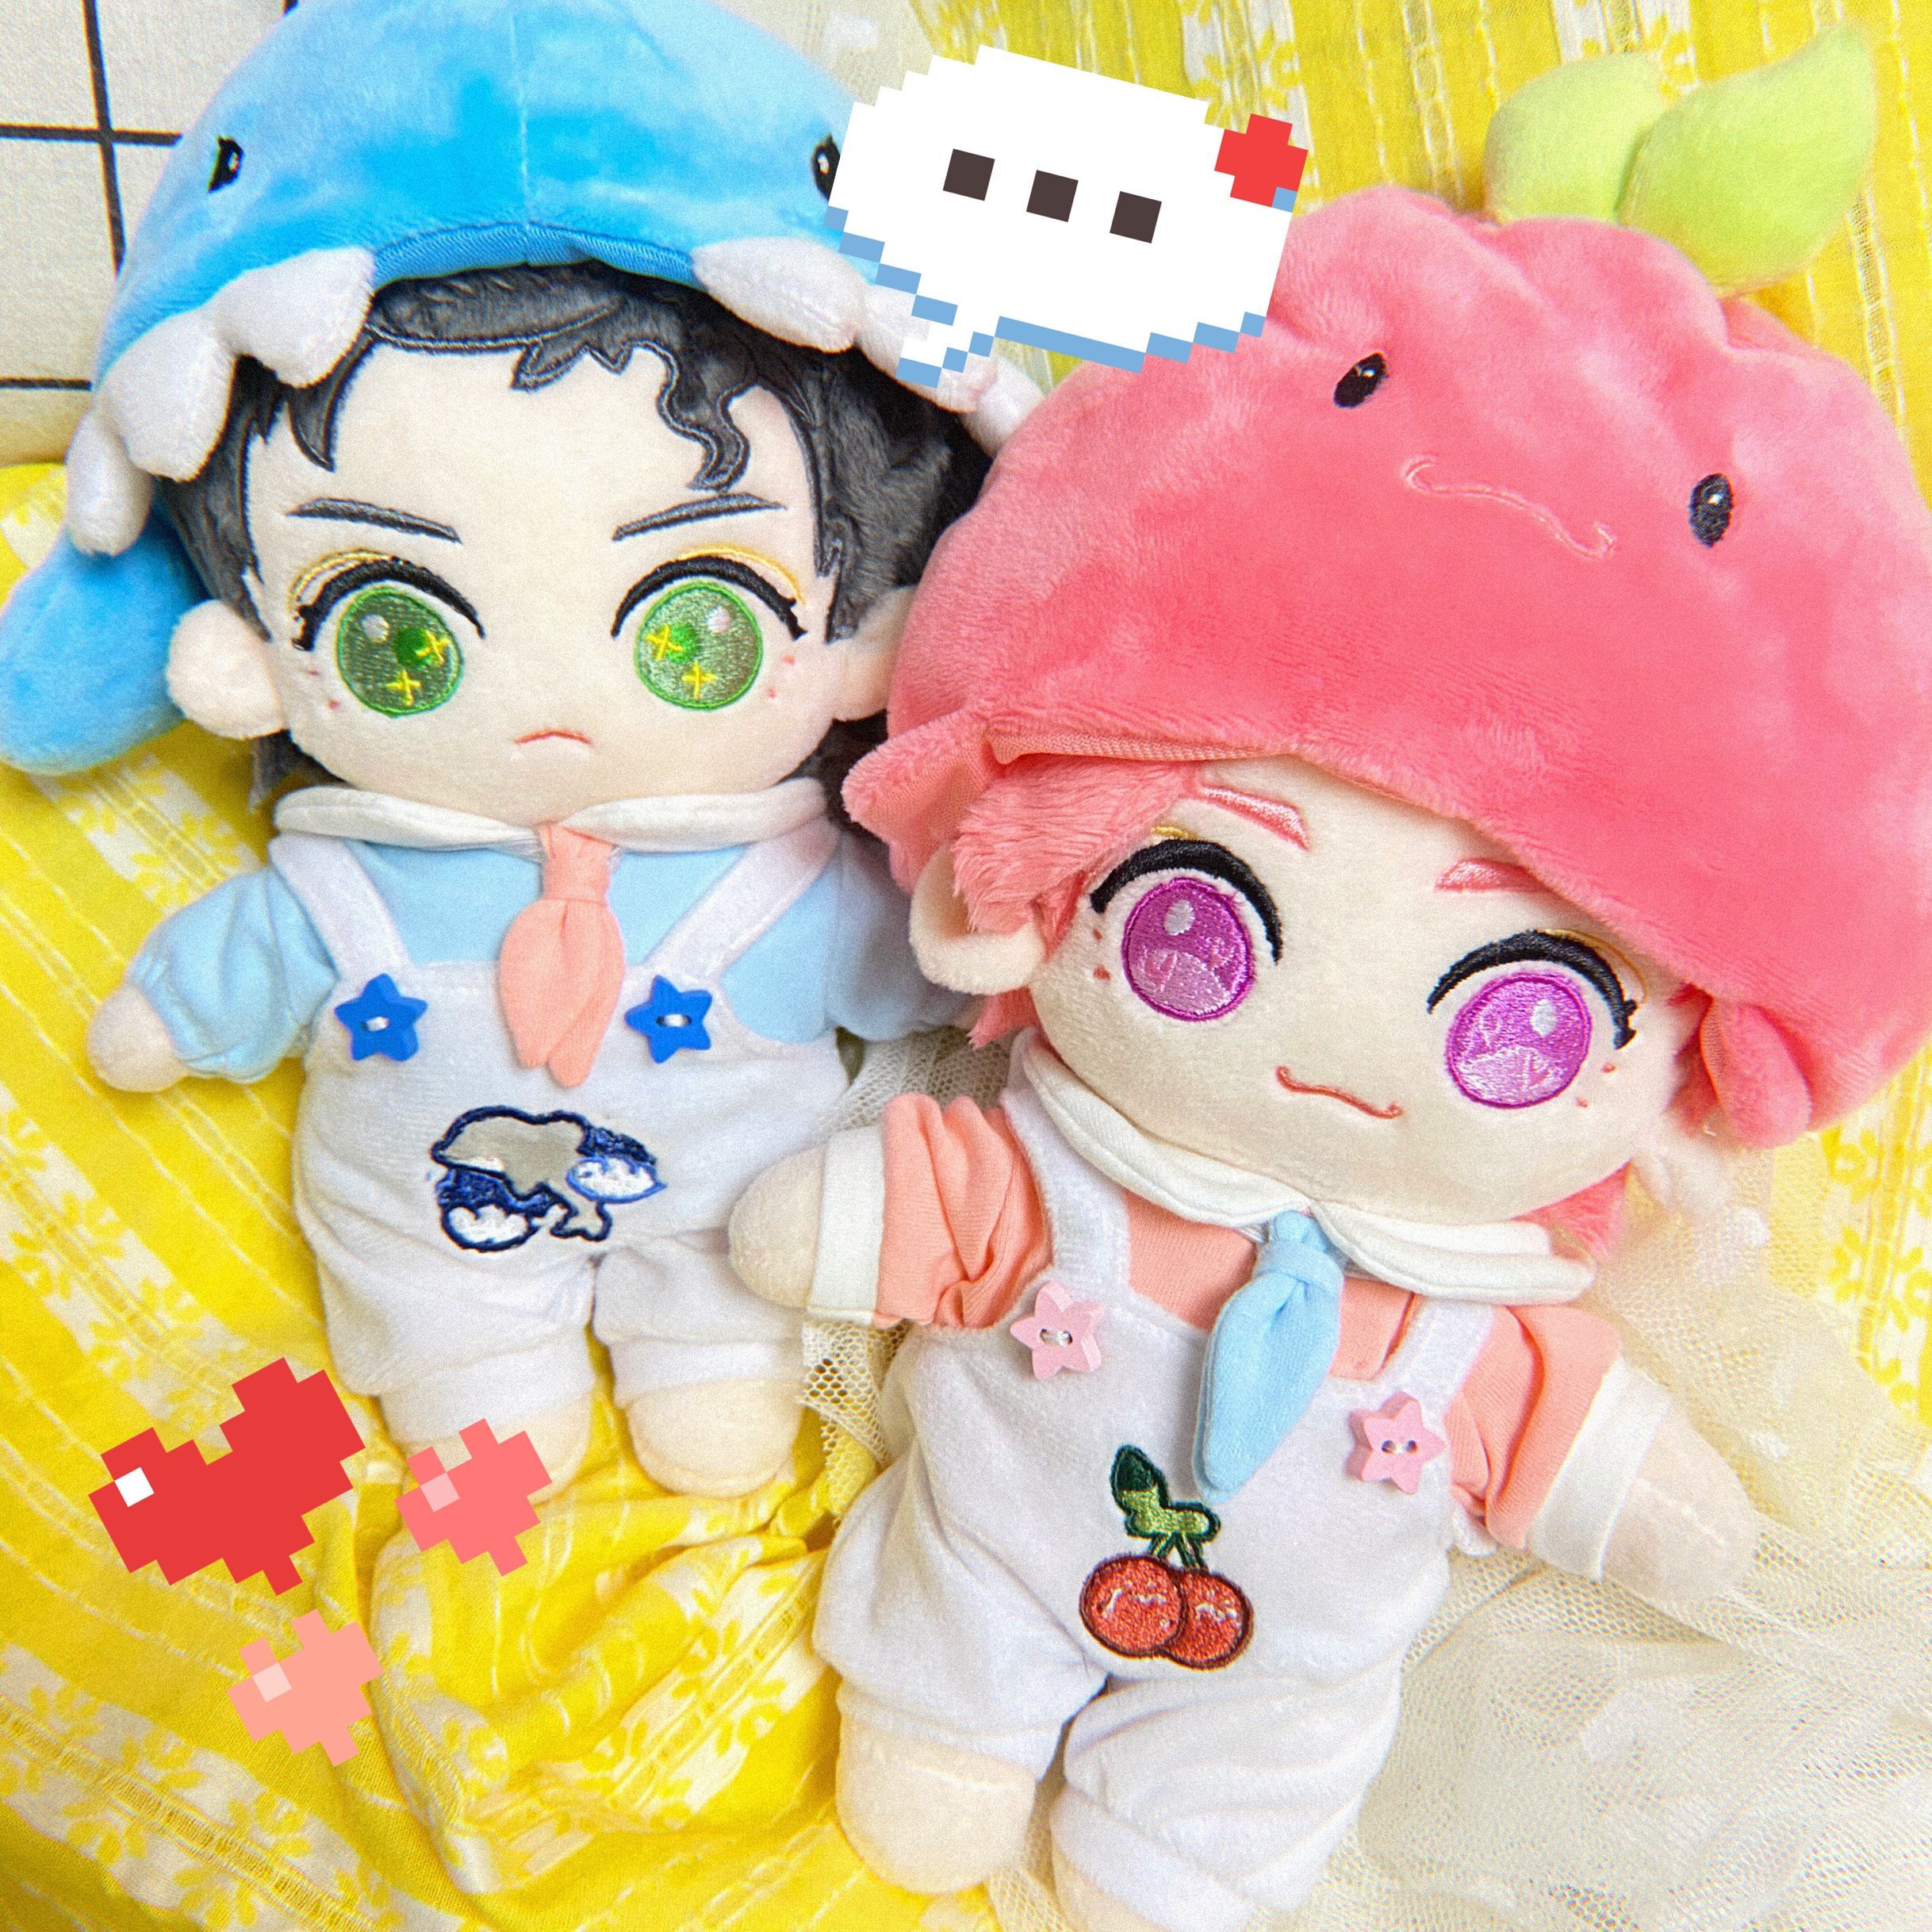 JoJo's Bizarre Adventure Kakyoin Noriaki Jotaro Plush Stuffed Doll Pillow Toy 